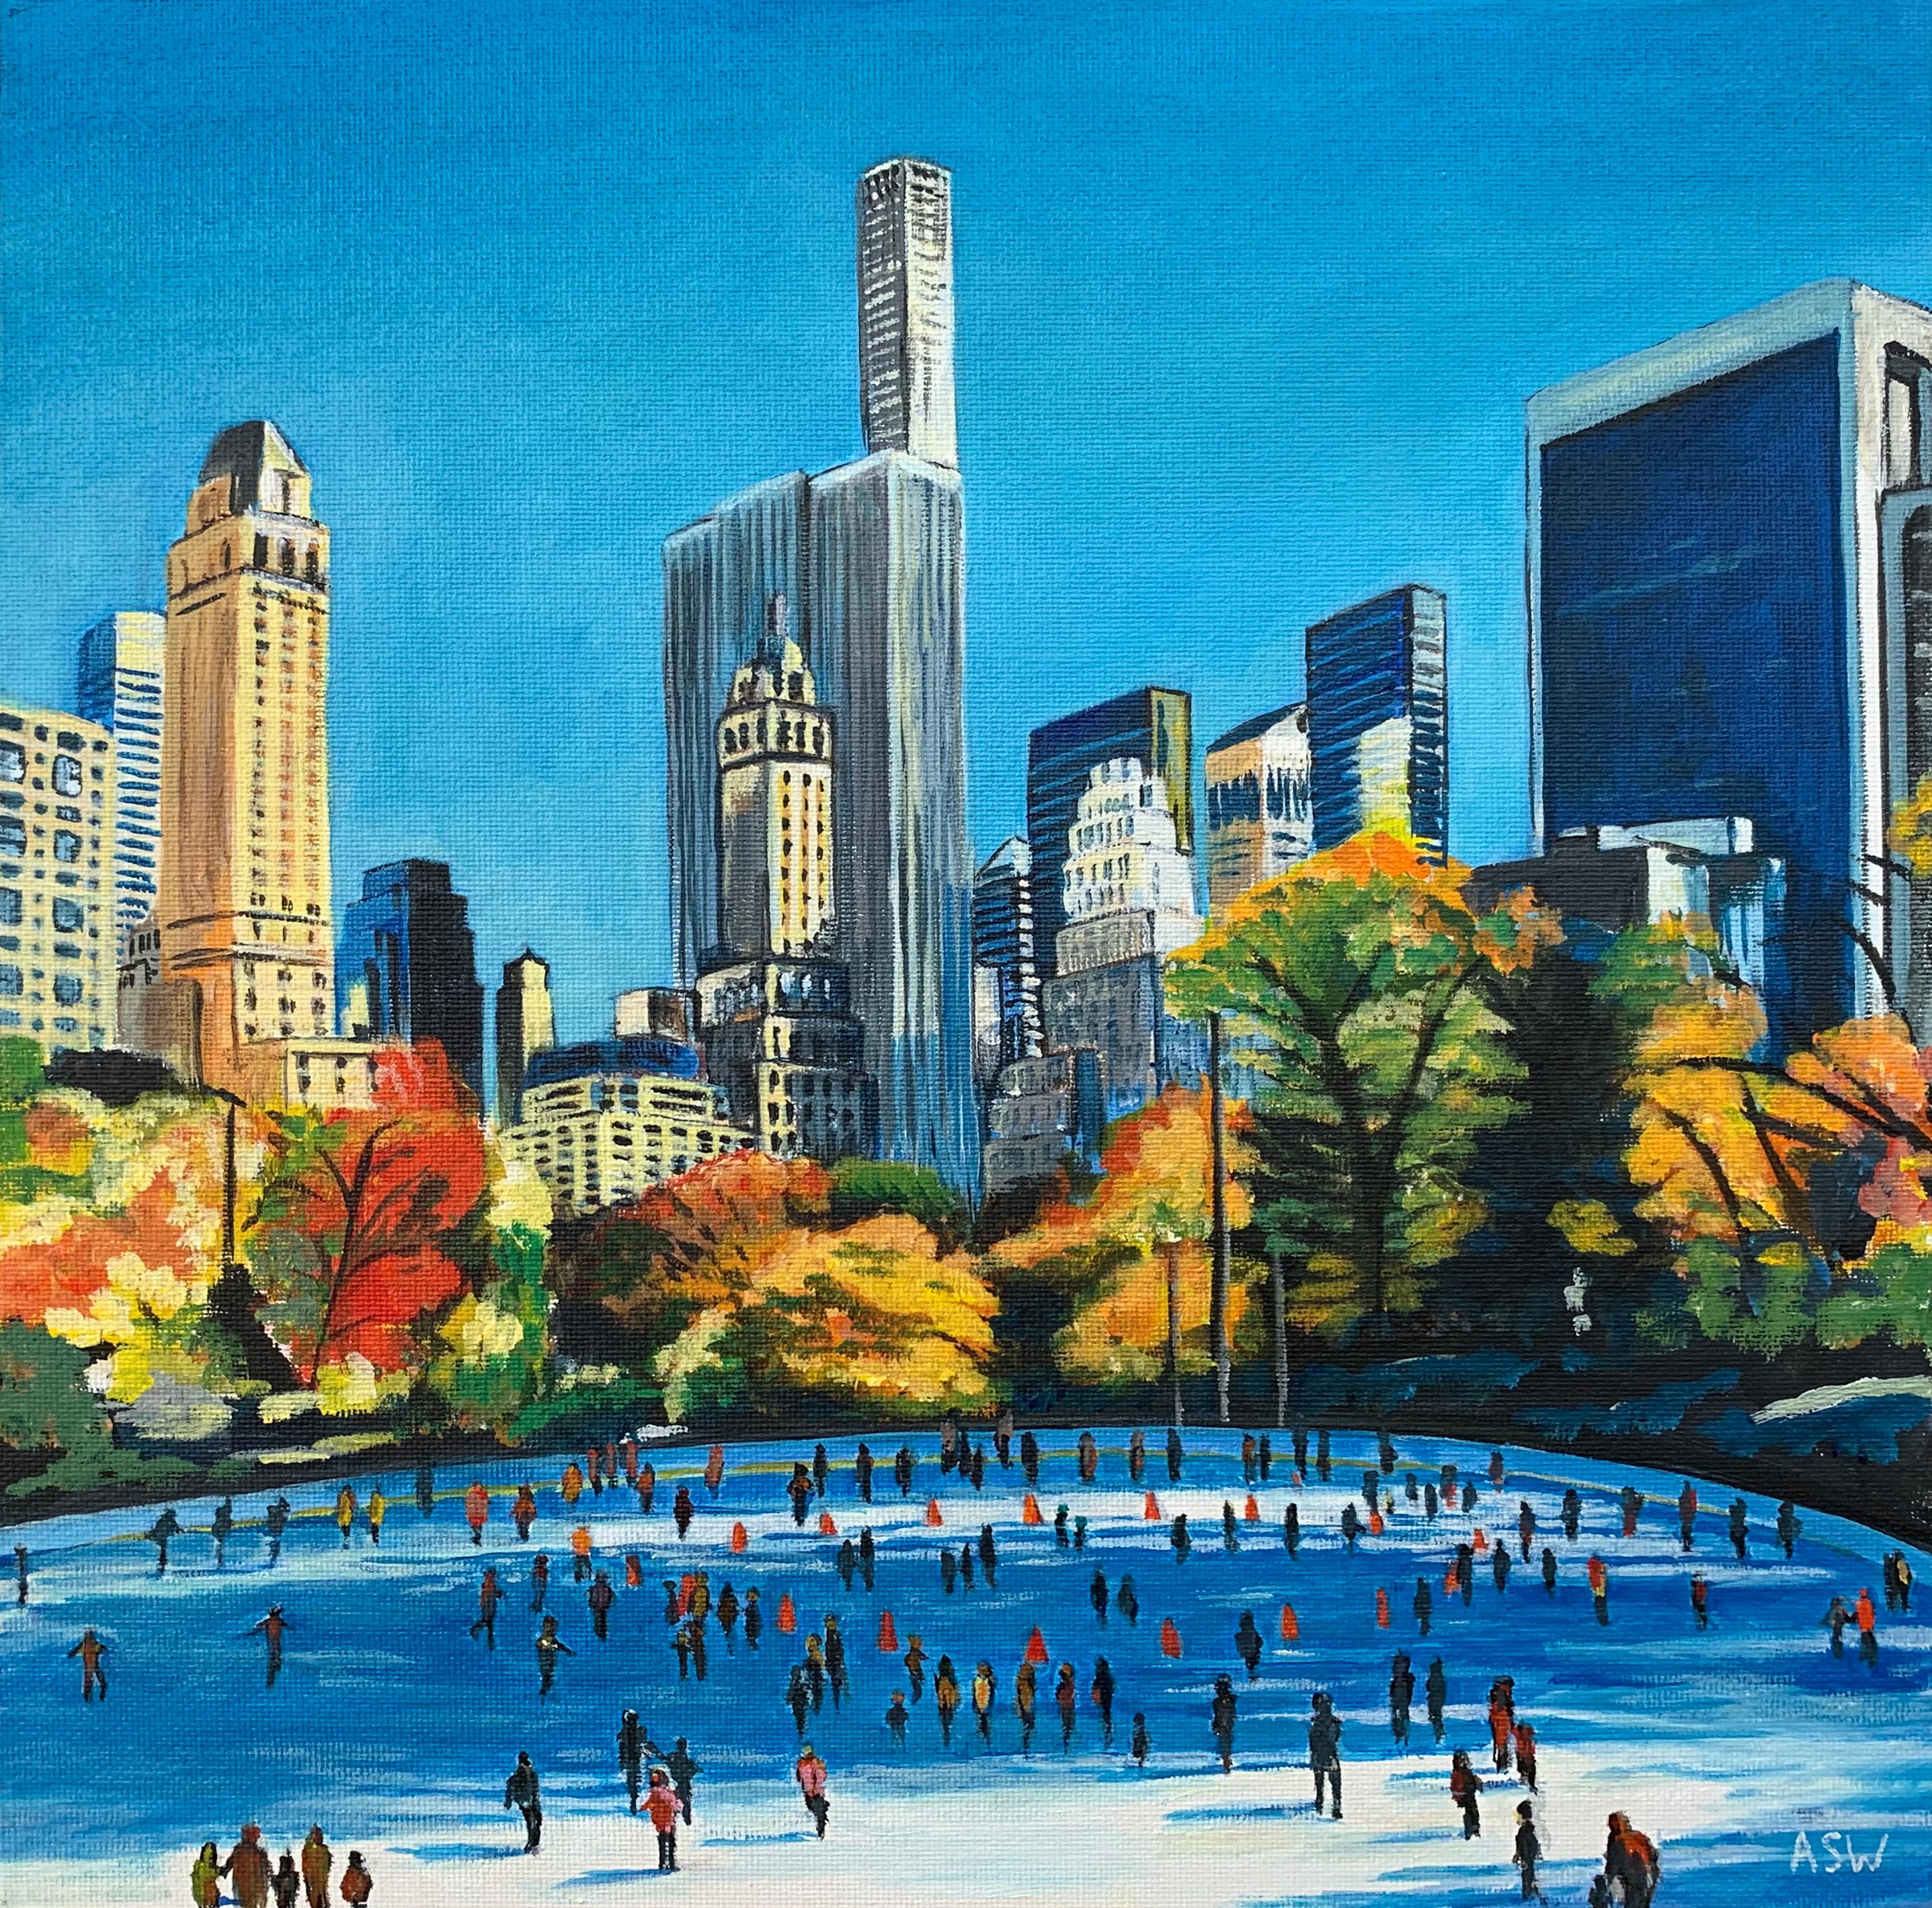 Gemälde von Skaters im Central Park, New York City, Herbst des britischen Künstlers 2